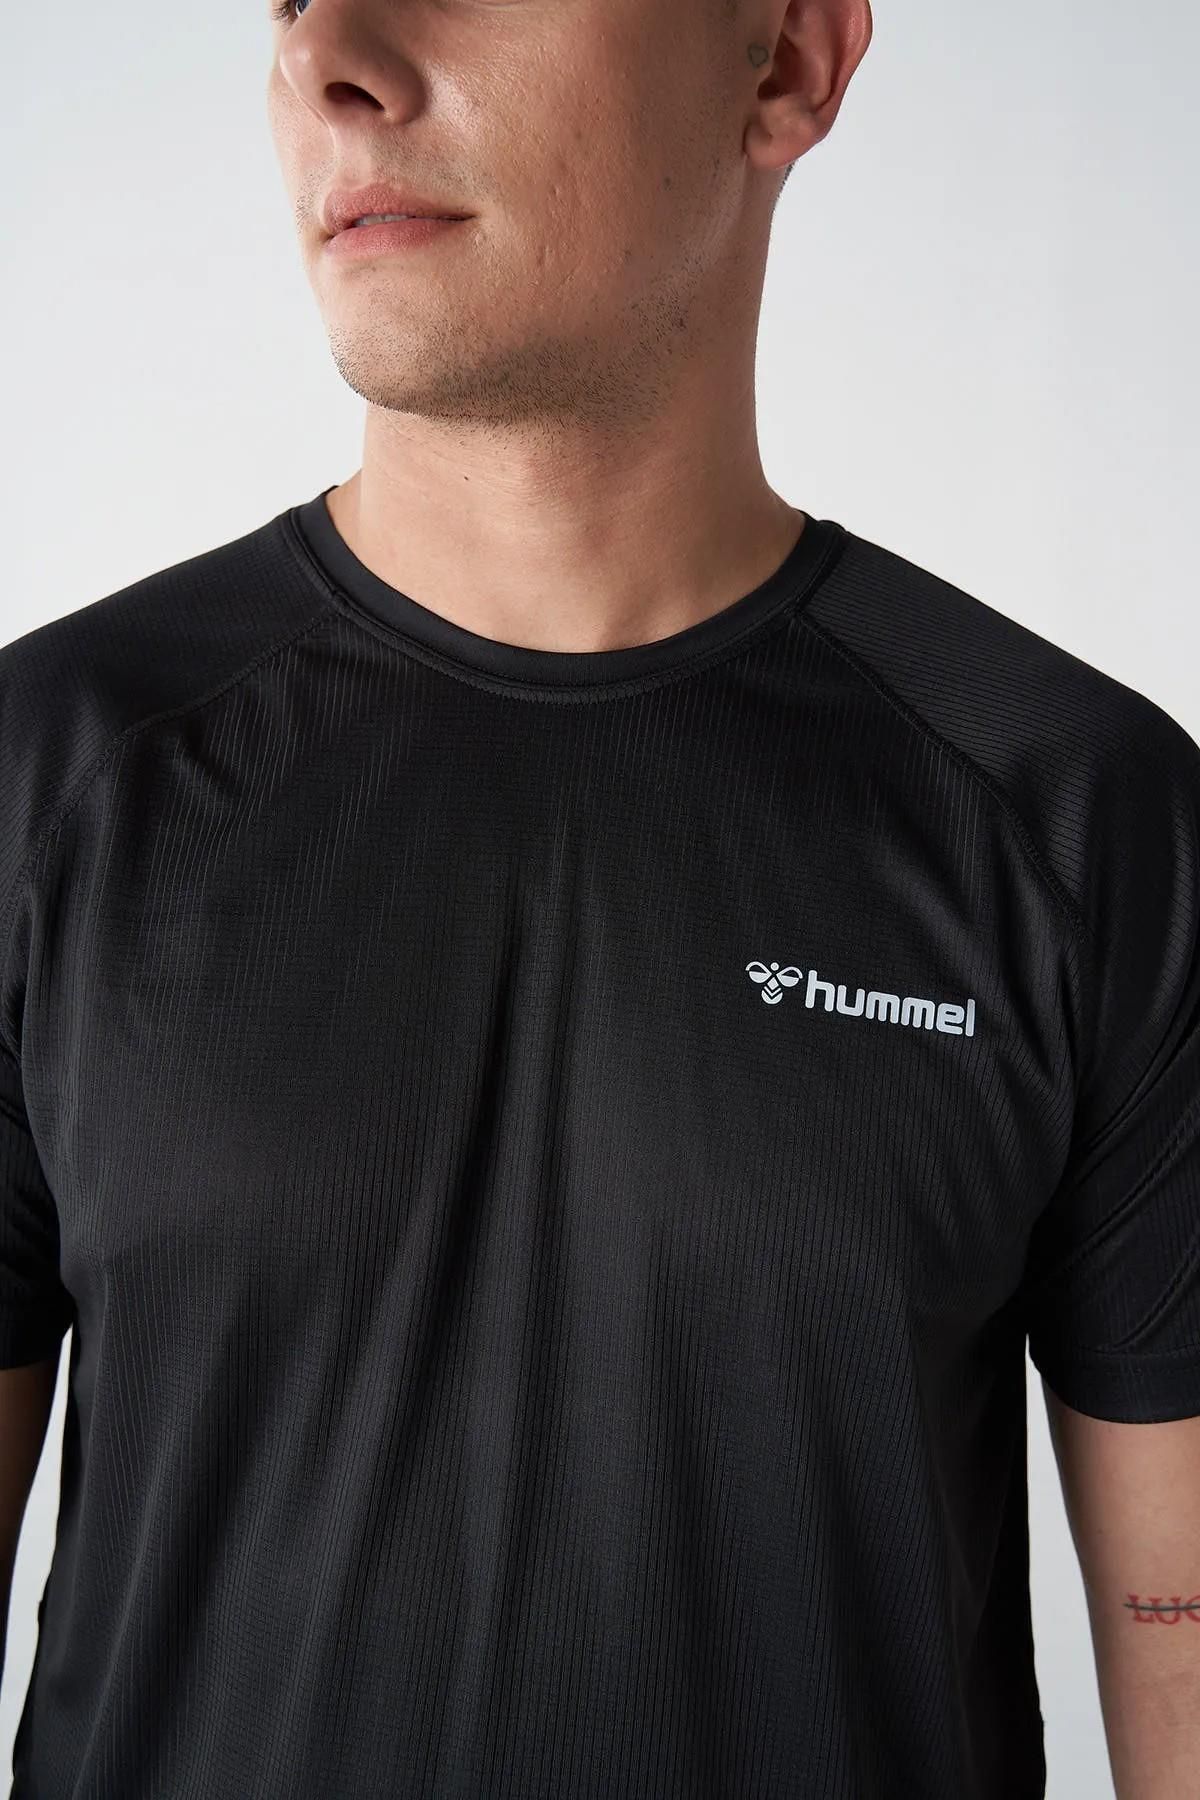 hummel 911871-2001 تی شرت ورزشی مردان تورو